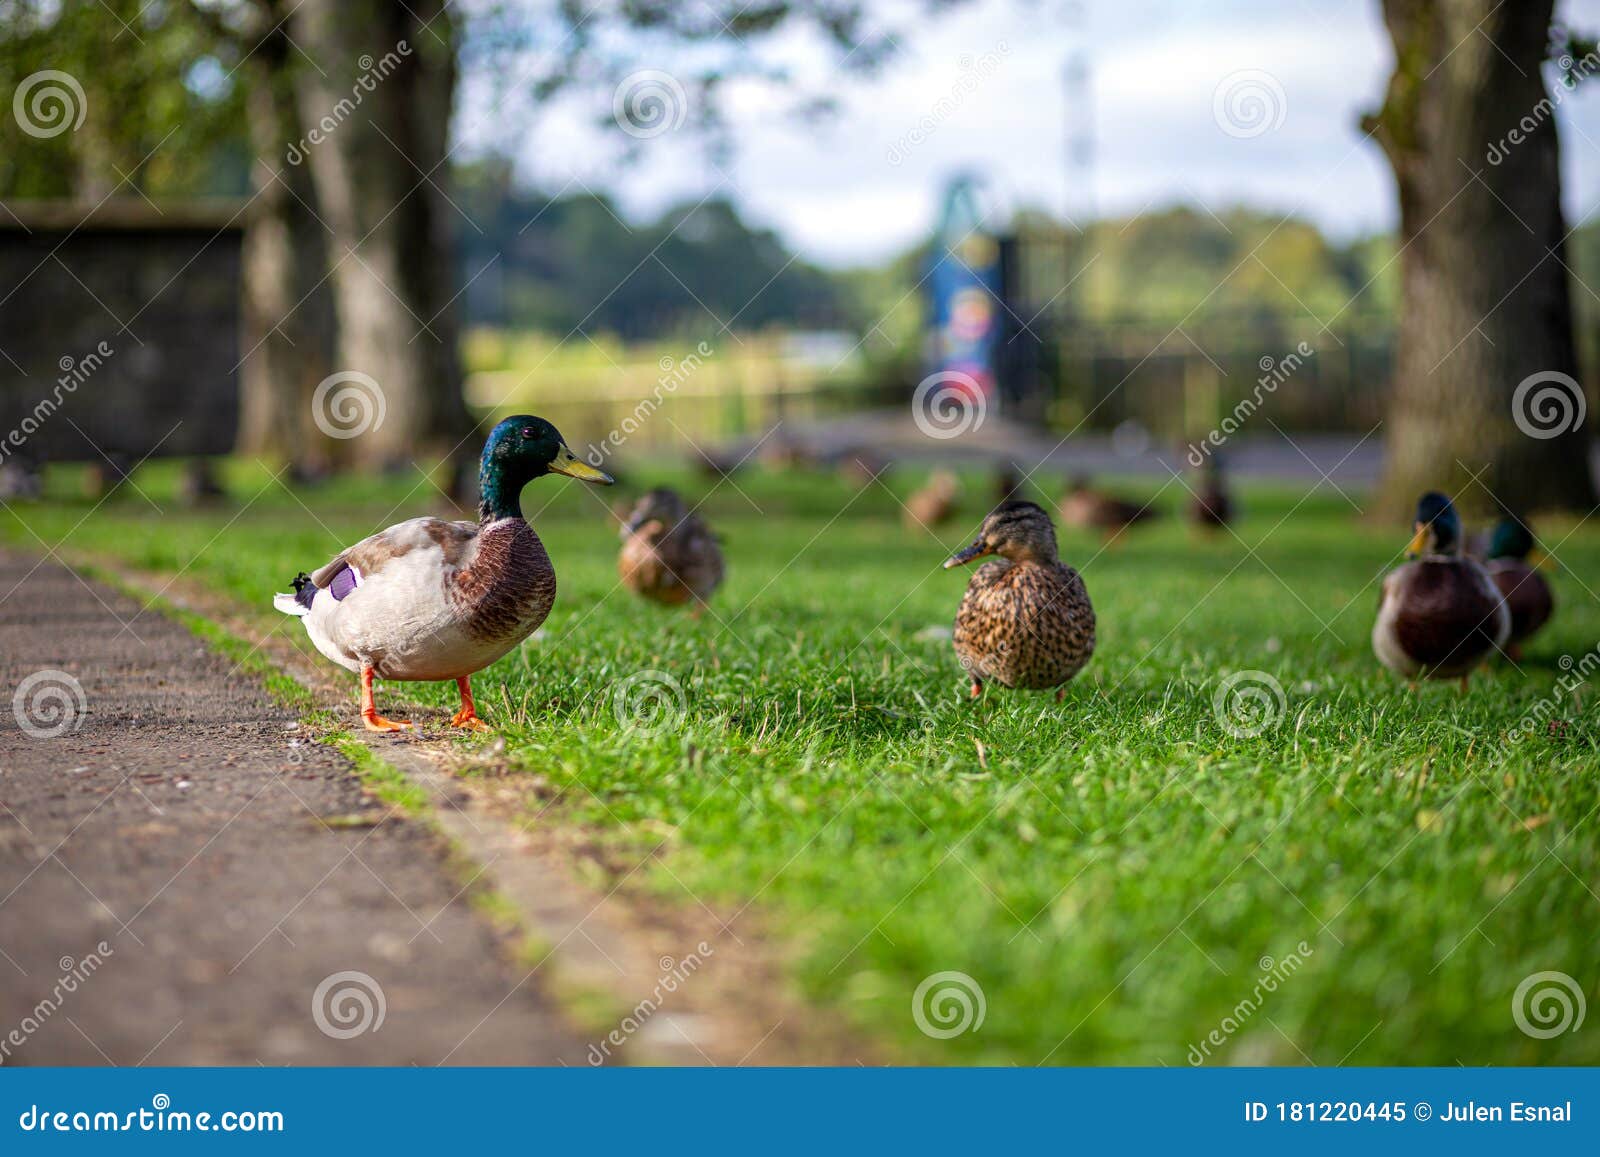 patos silvestres esperando comer en enniskillen